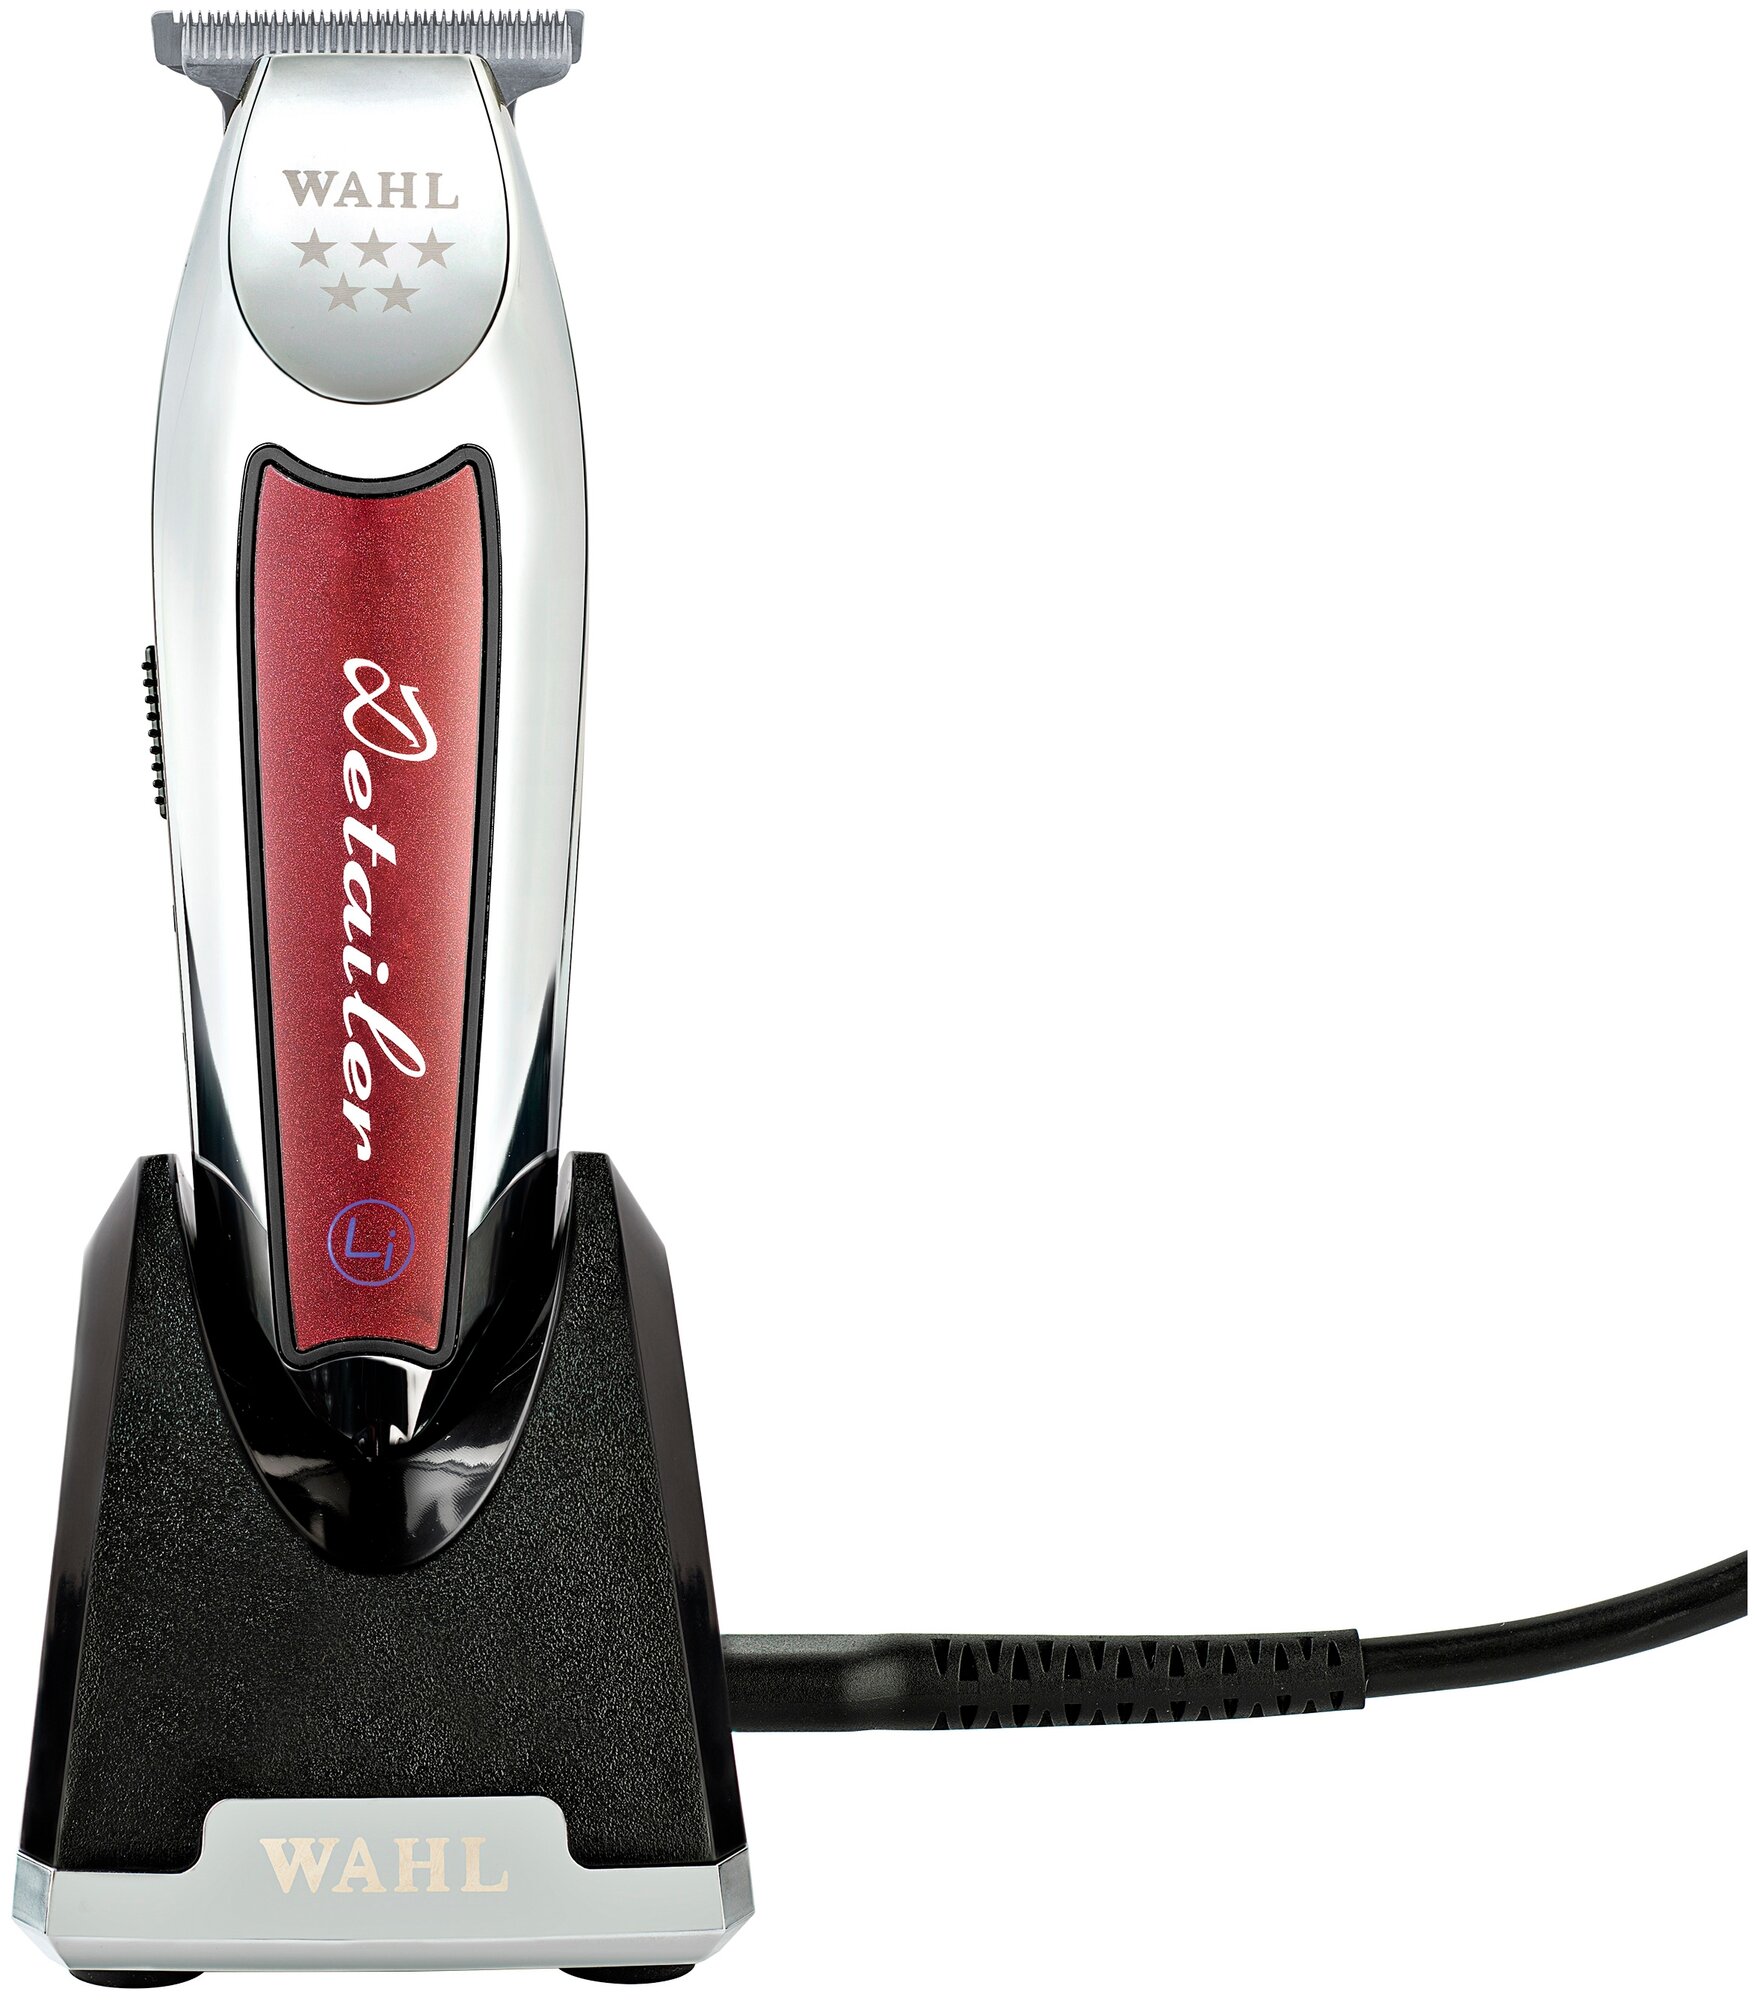 Машинка для стрижки Wahl Cordless Detailer LI 8171-016, красный, серебро